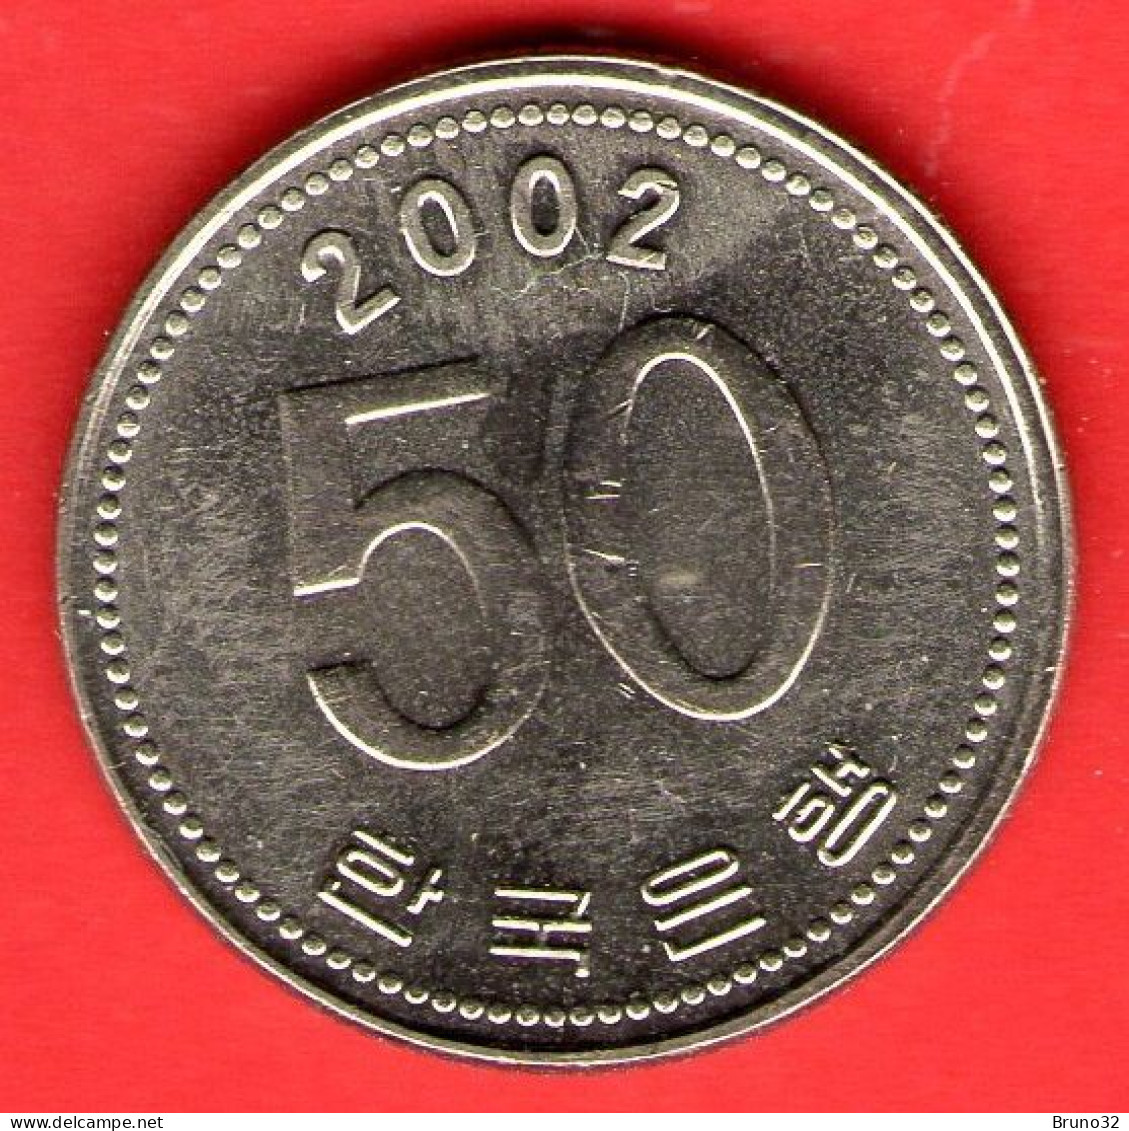 COREA DEL SUD - SOUTH KOREA - 2002 - 50 Won - QFDC/aUNC - Come Da Foto - Corée Du Sud